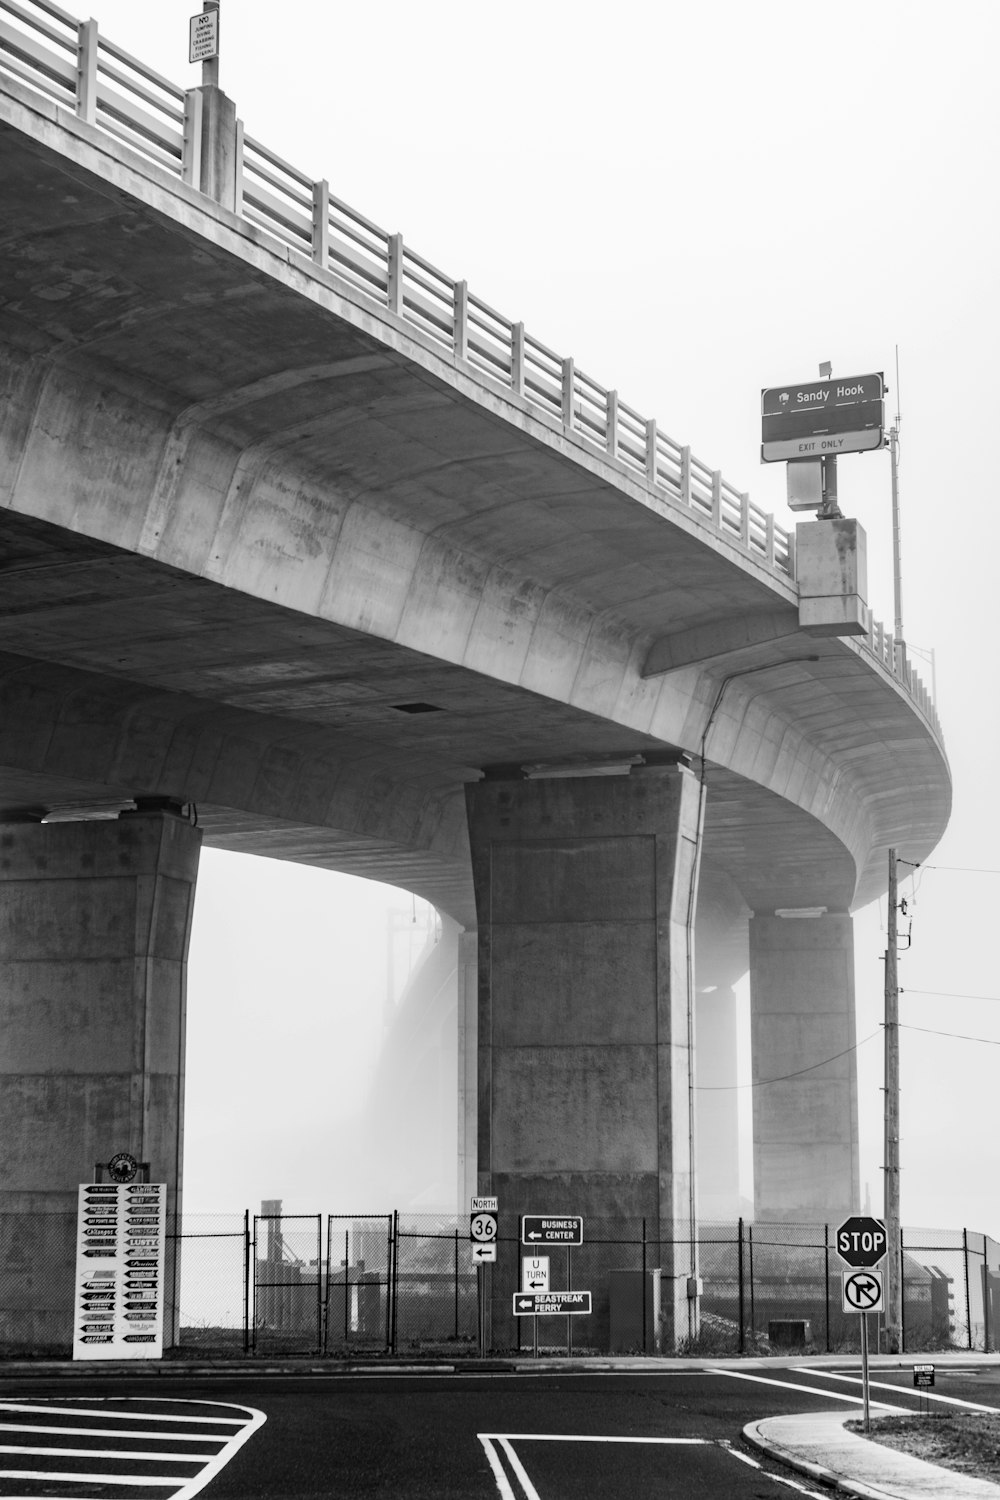 Photo en niveaux de gris du pont